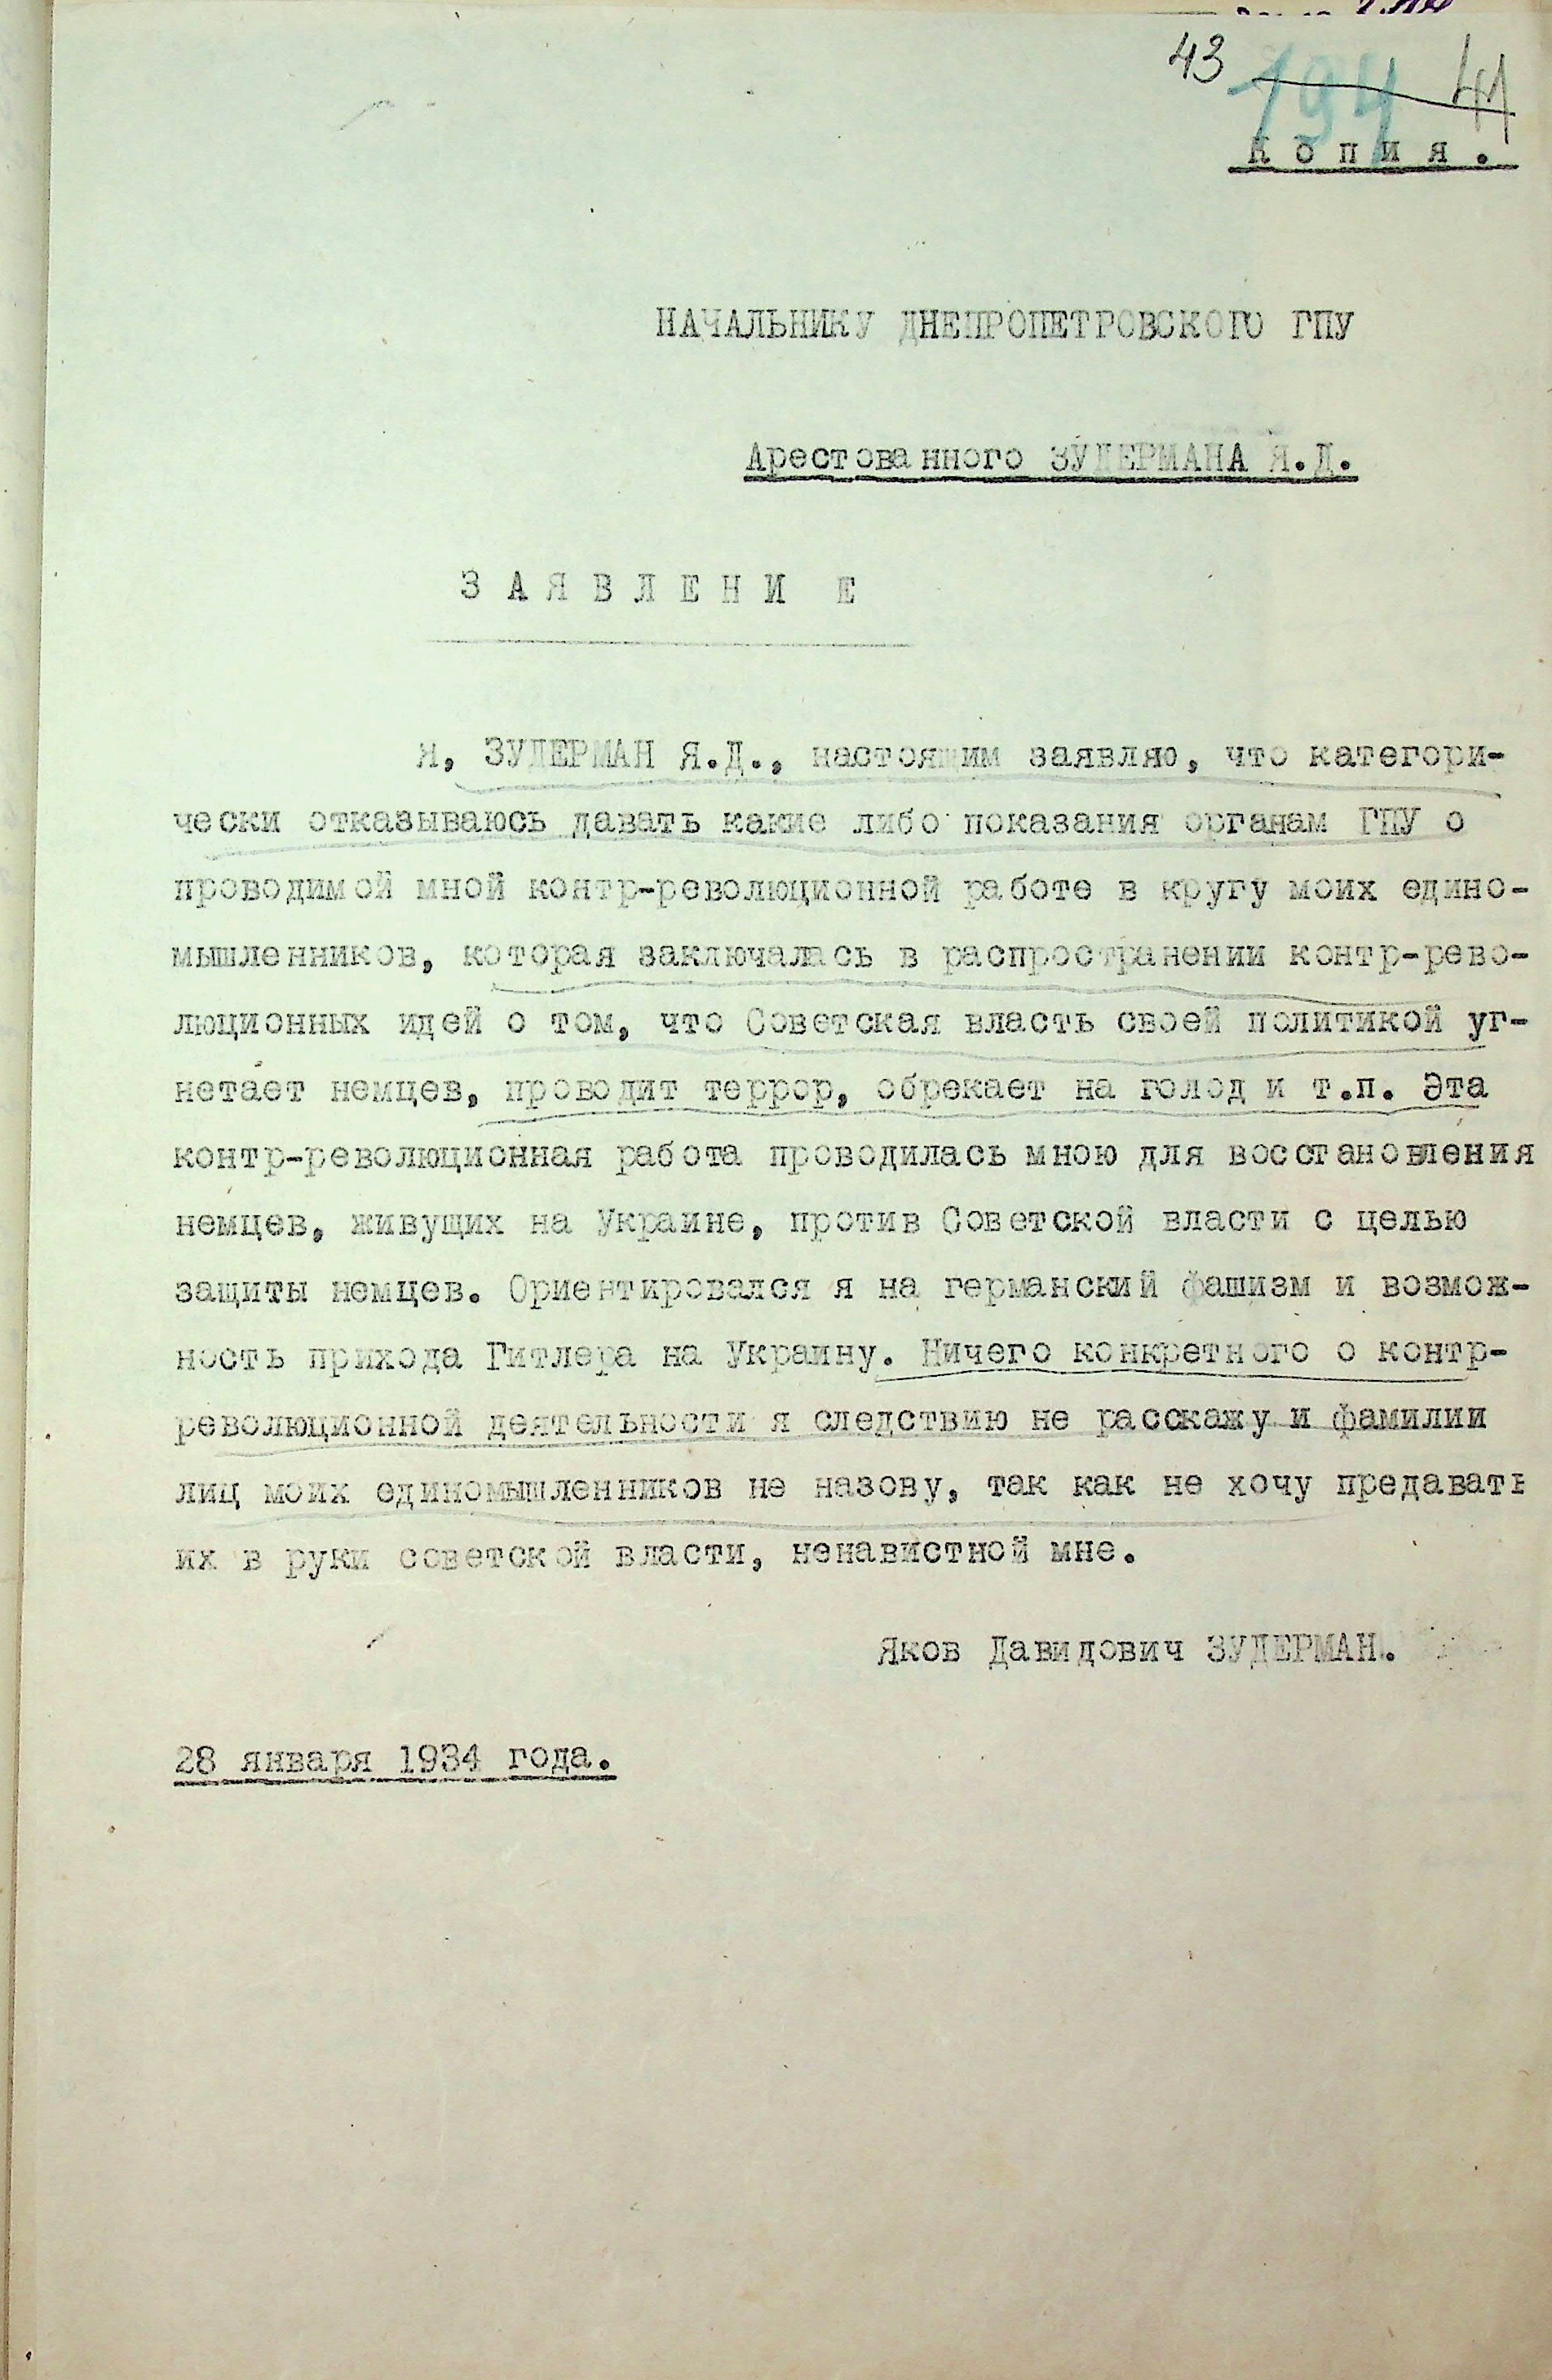 Заявление от 28 января 1934 года Яков Давыдович Зудерман .jpg